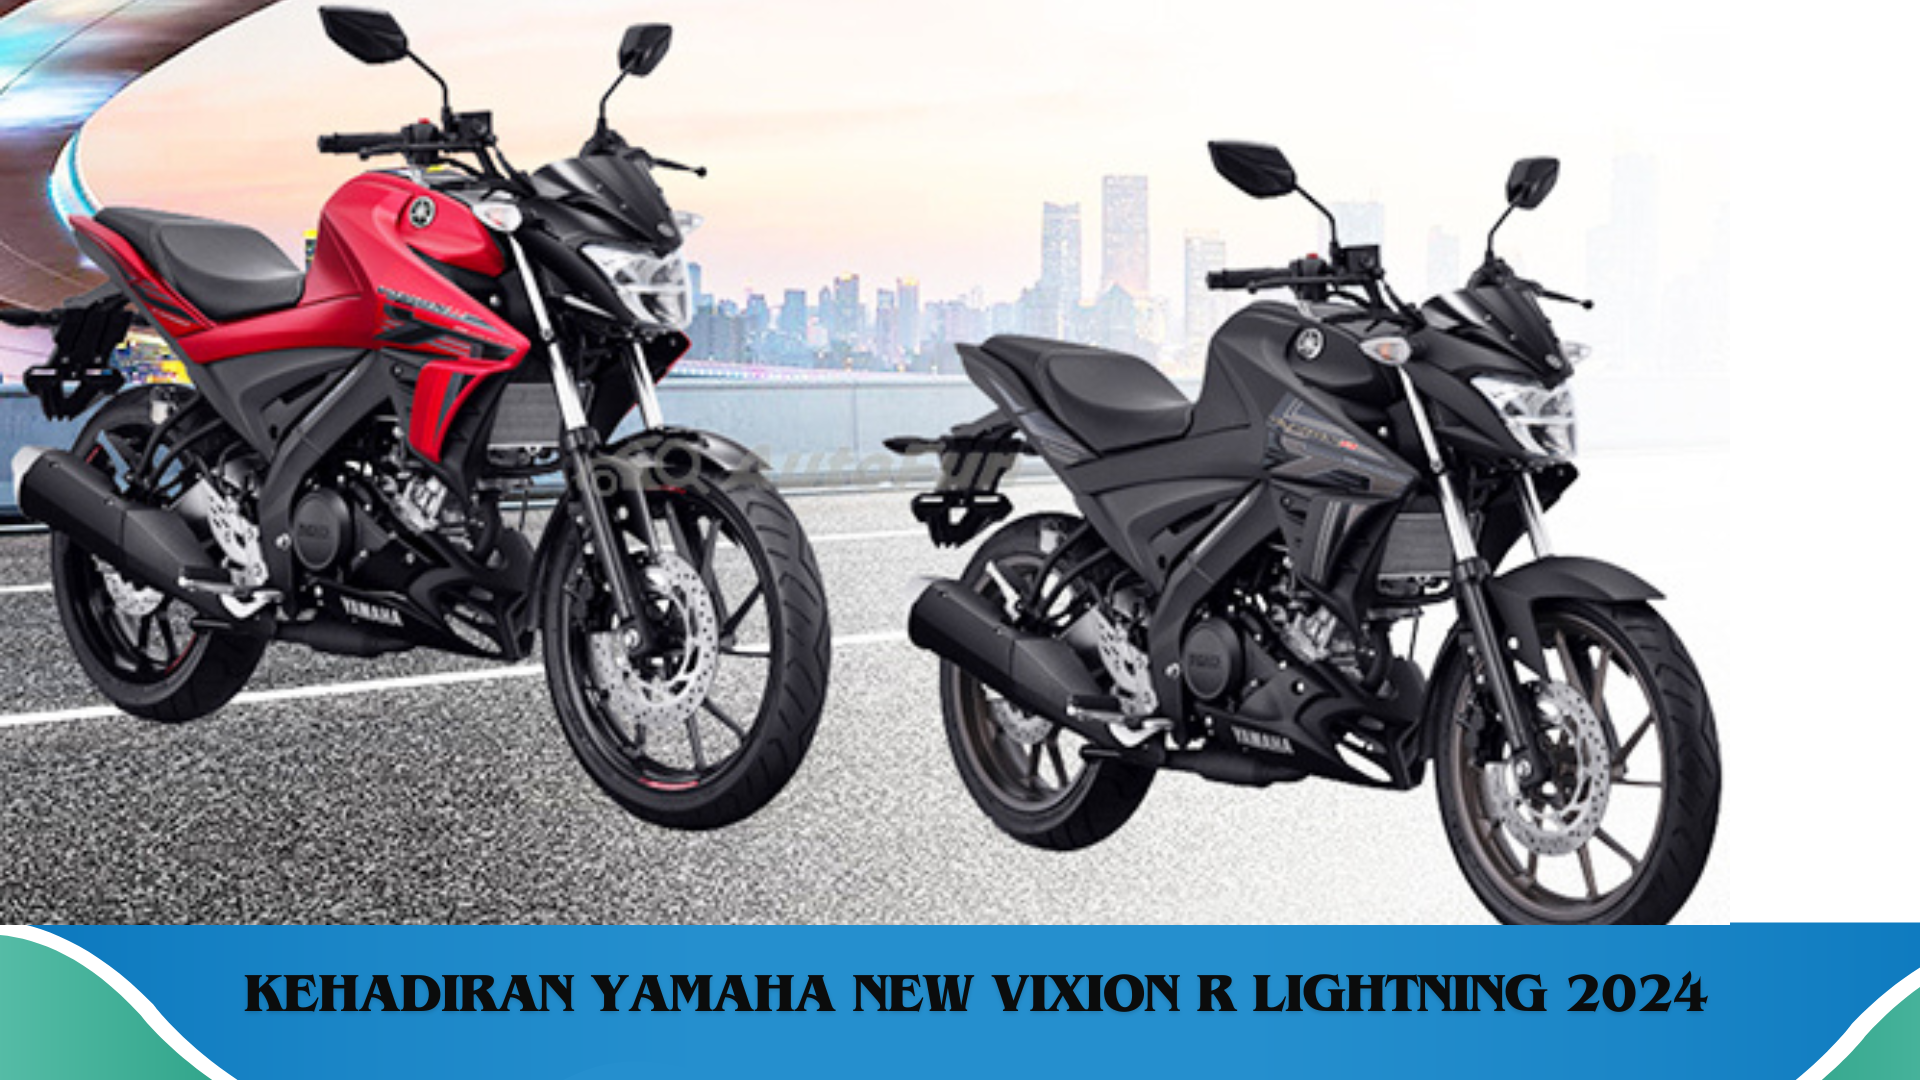 Yamaha New Vixion R Lightning 2024, Meluncur dengan Desain Ramping dan Apik yang Menjadi Daya Tariknya